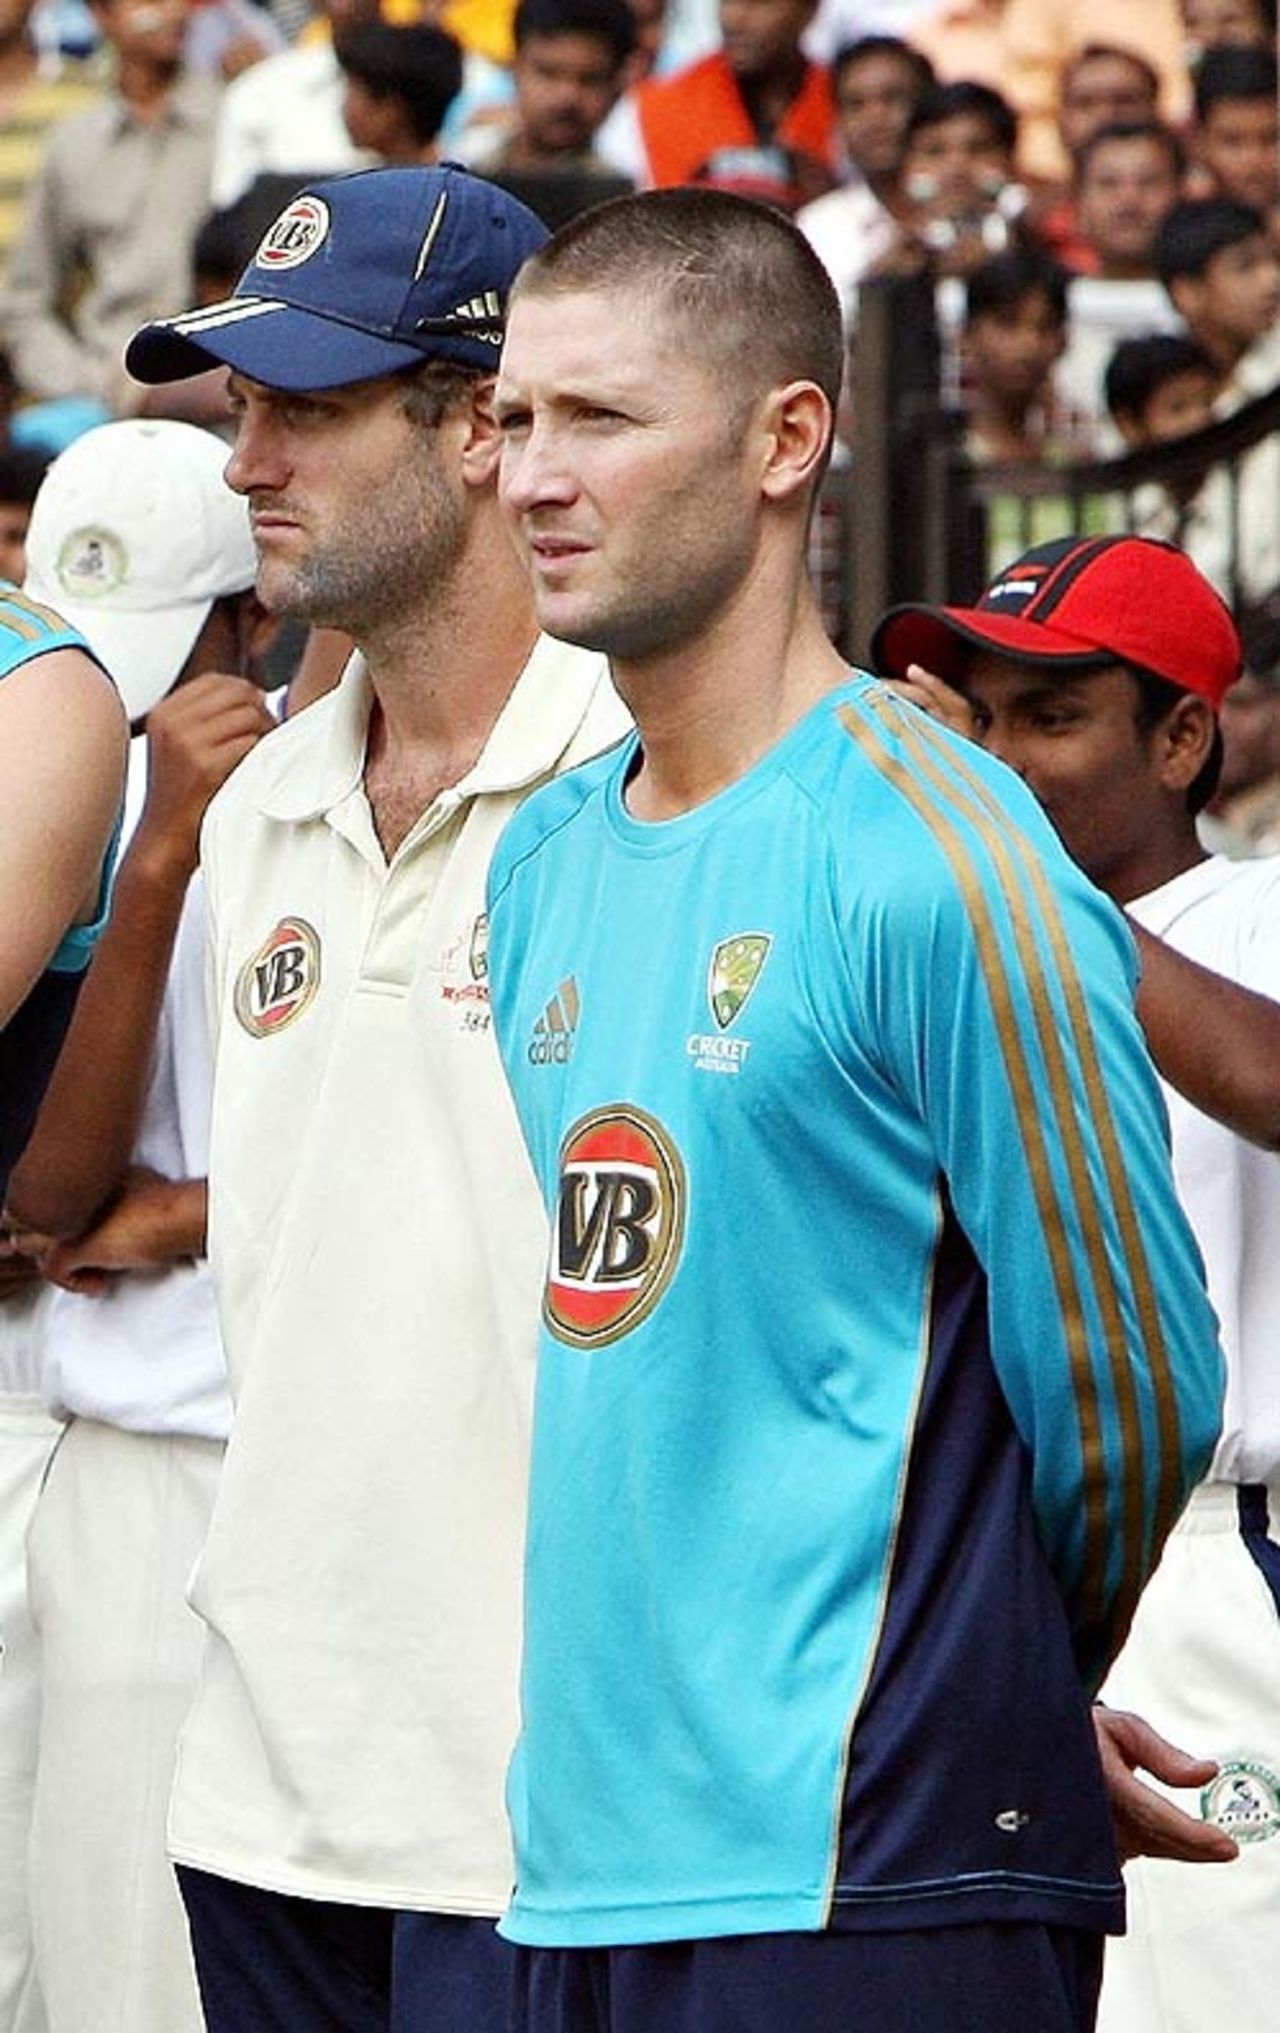 Simon Katich and Michael Clarke after Australia's loss, India v Australia, 4th Test, Nagpur, 5th day, November 10, 2008